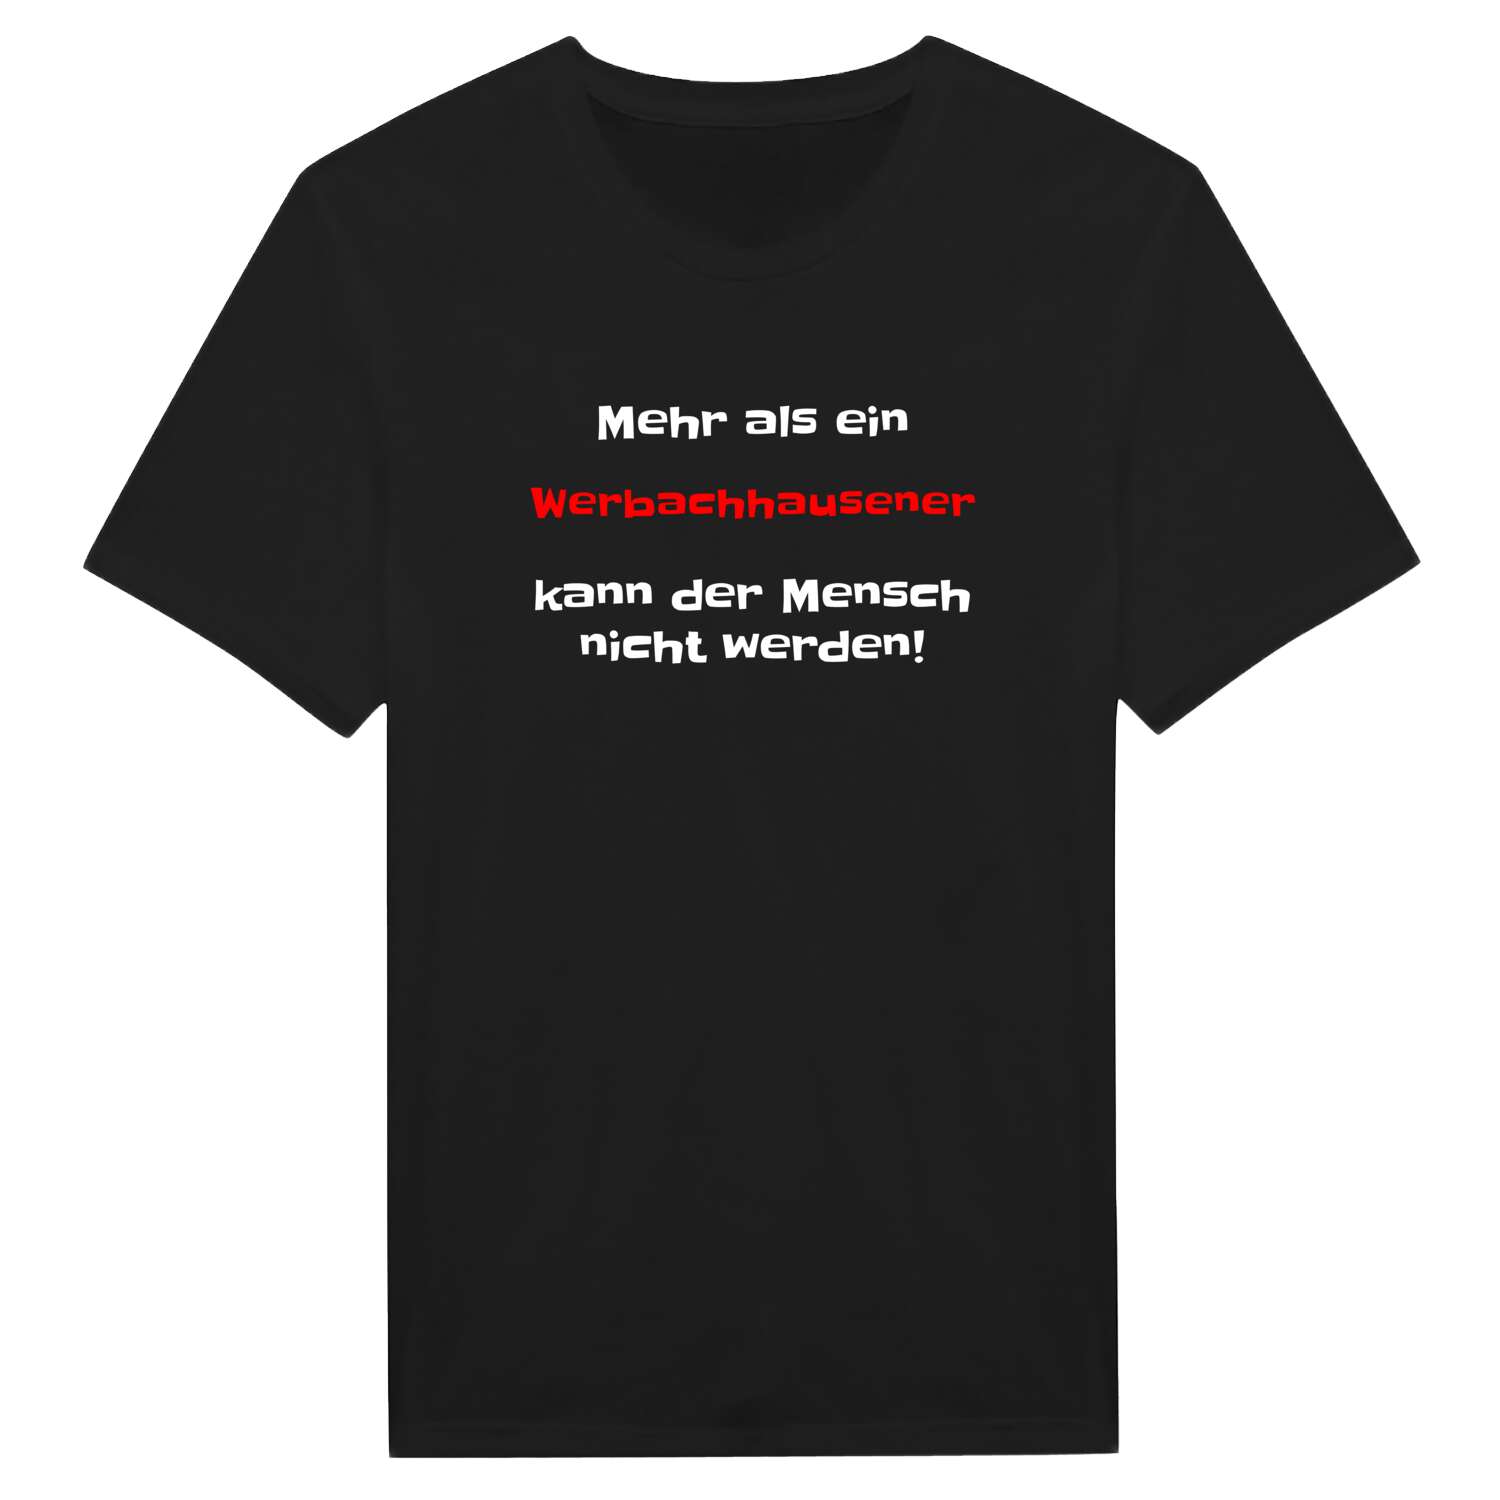 Werbachhausen T-Shirt »Mehr als ein«